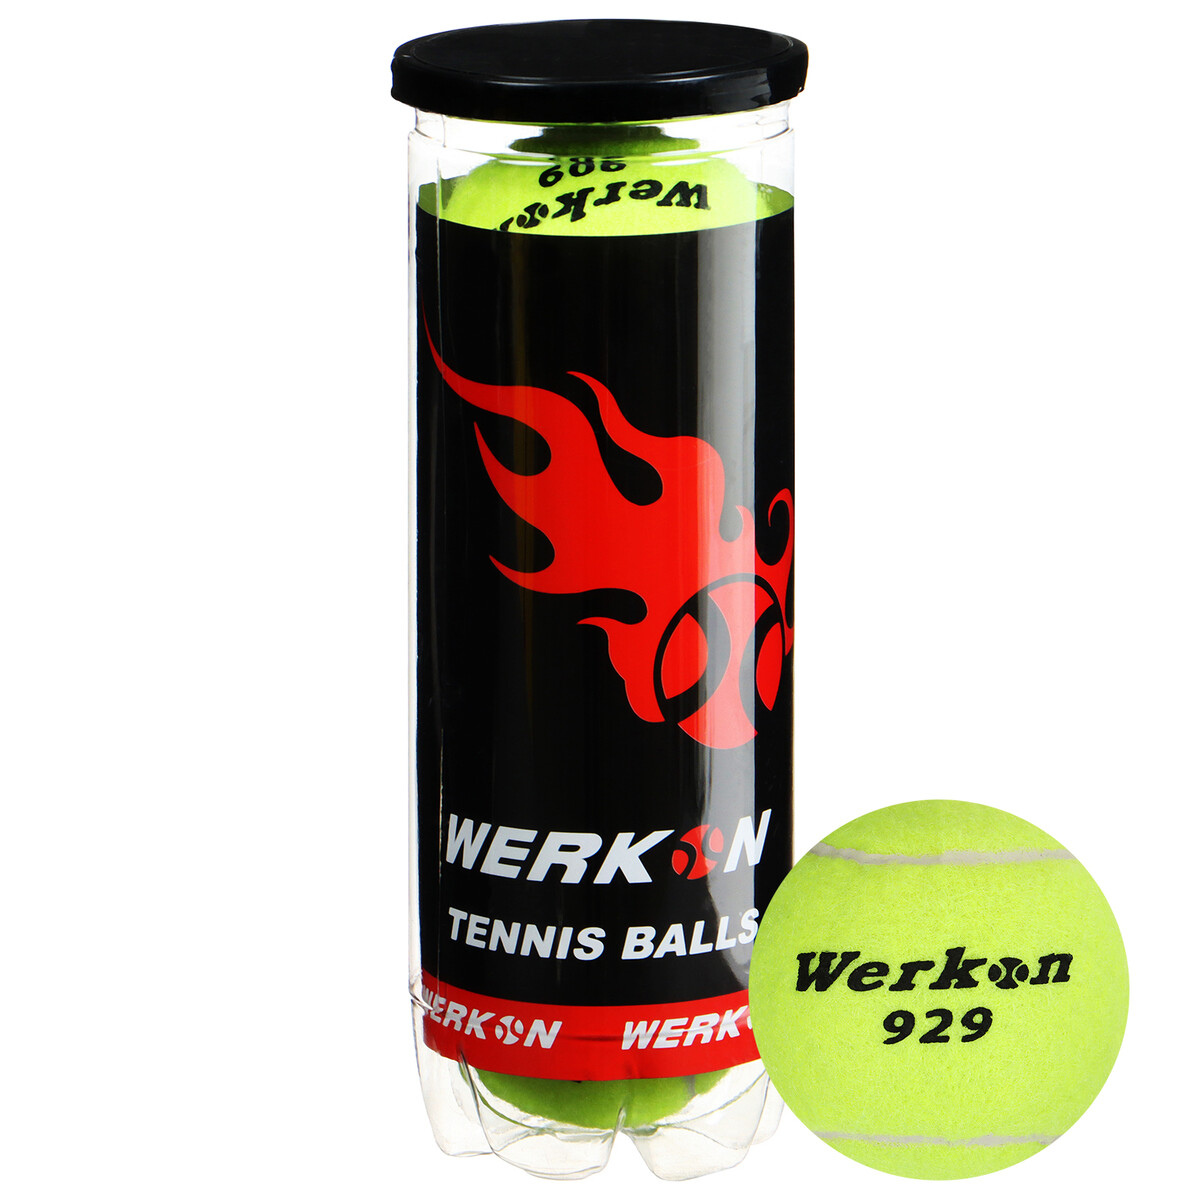 Набор мячей для большого тенниса werkon 929 в тубе, 3 шт. набор зажимов для бумаг ных 19мм 40 штук 4 а в пластиковой тубе